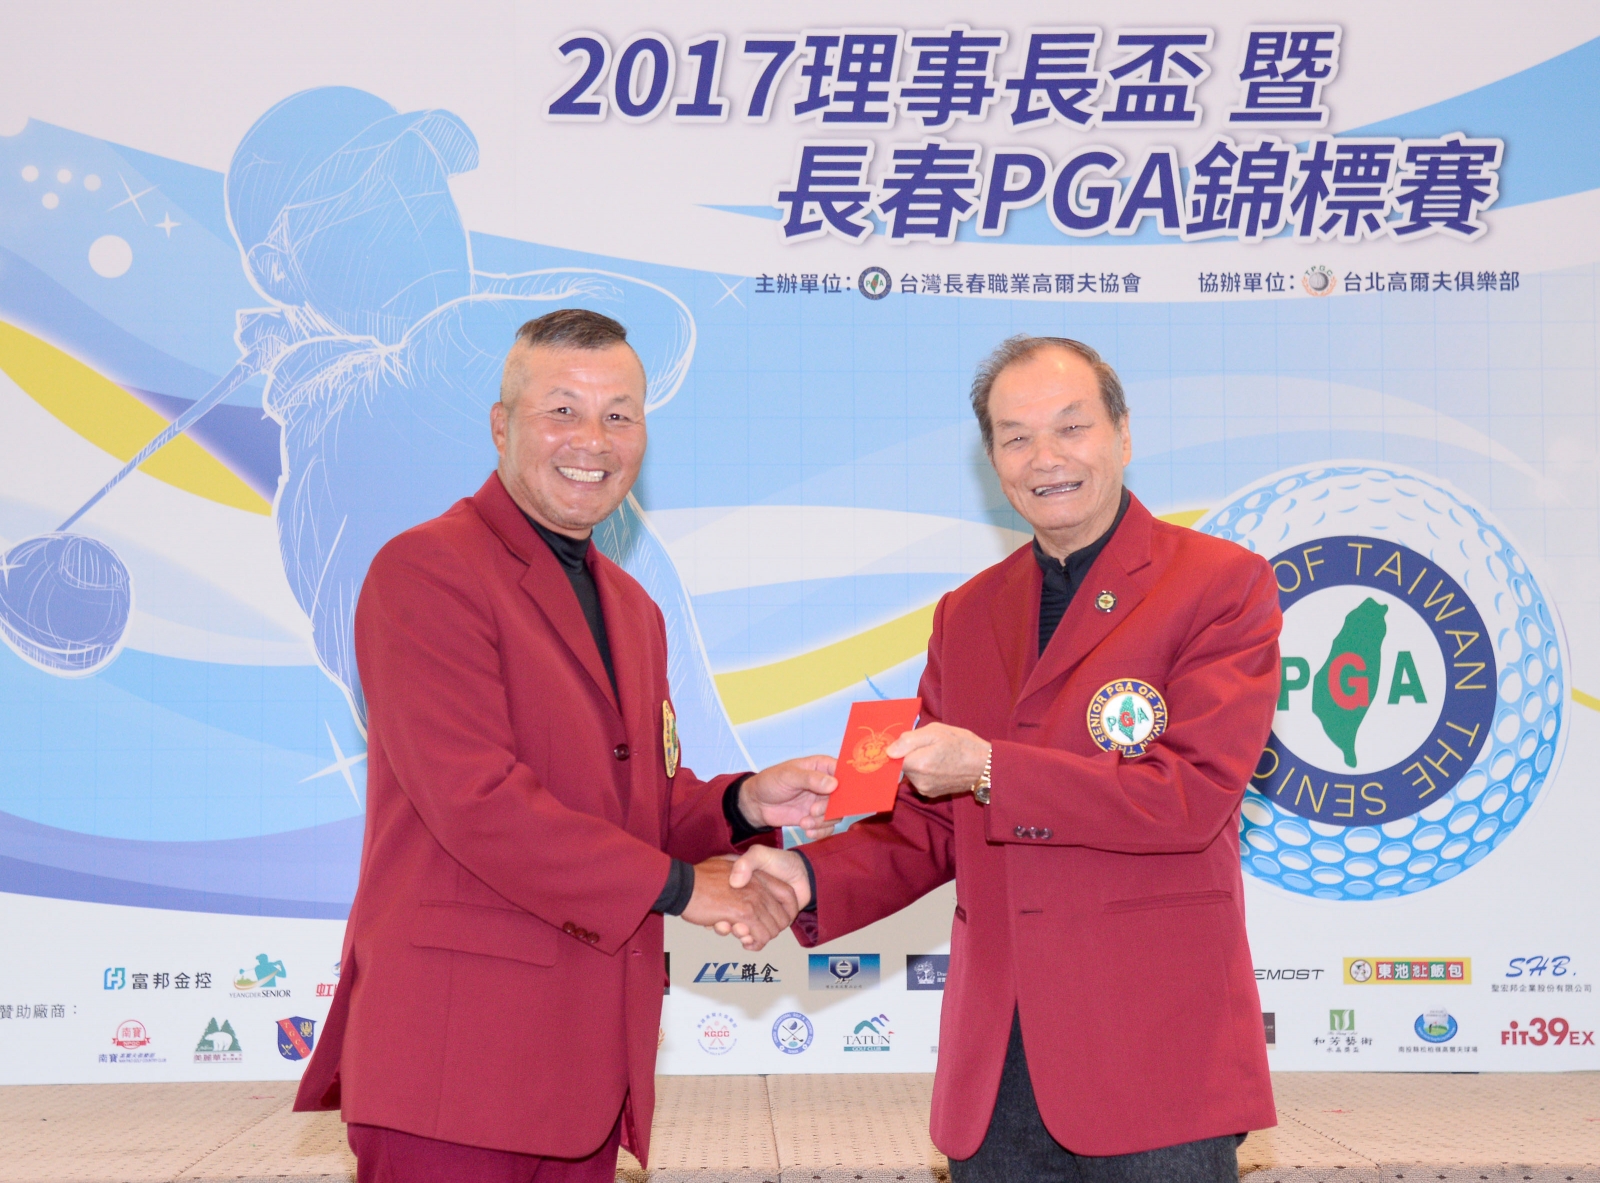 台灣長春職業高爾夫協會理事長盧建順(左)頒贈同齡同桿獎予謝敏男(77歲77桿)(陳宏佳攝影)